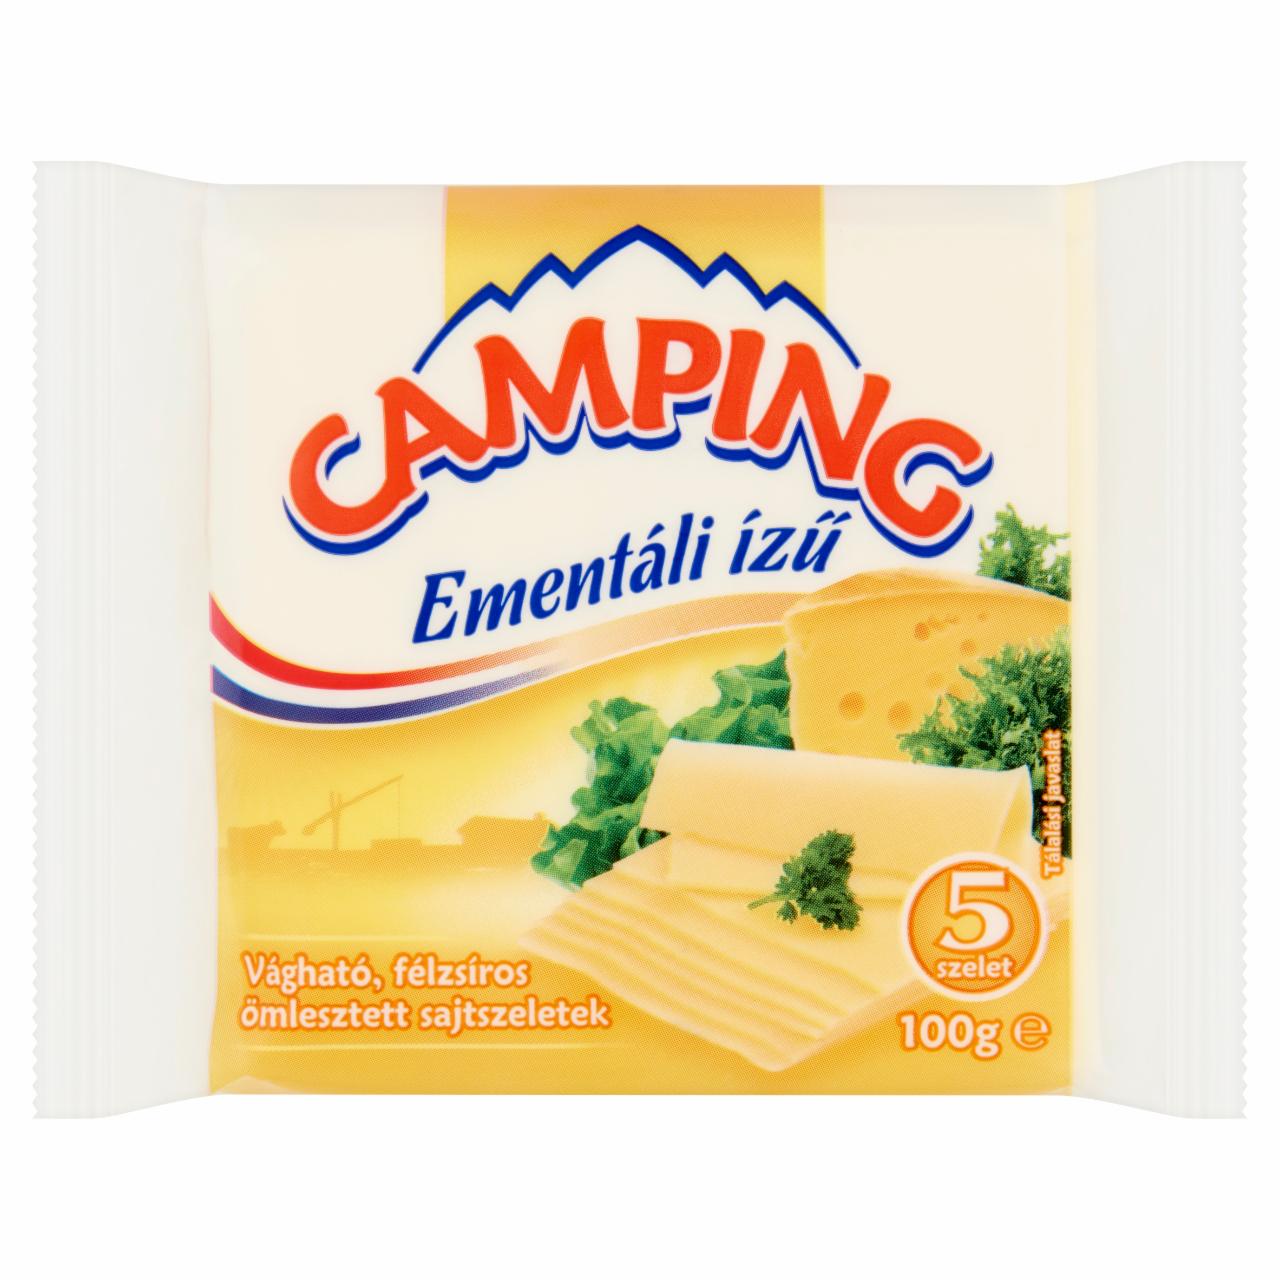 Képek - Camping ementáli ízű vágható, félzsíros ömlesztett sajtszeletek 5 db 100 g